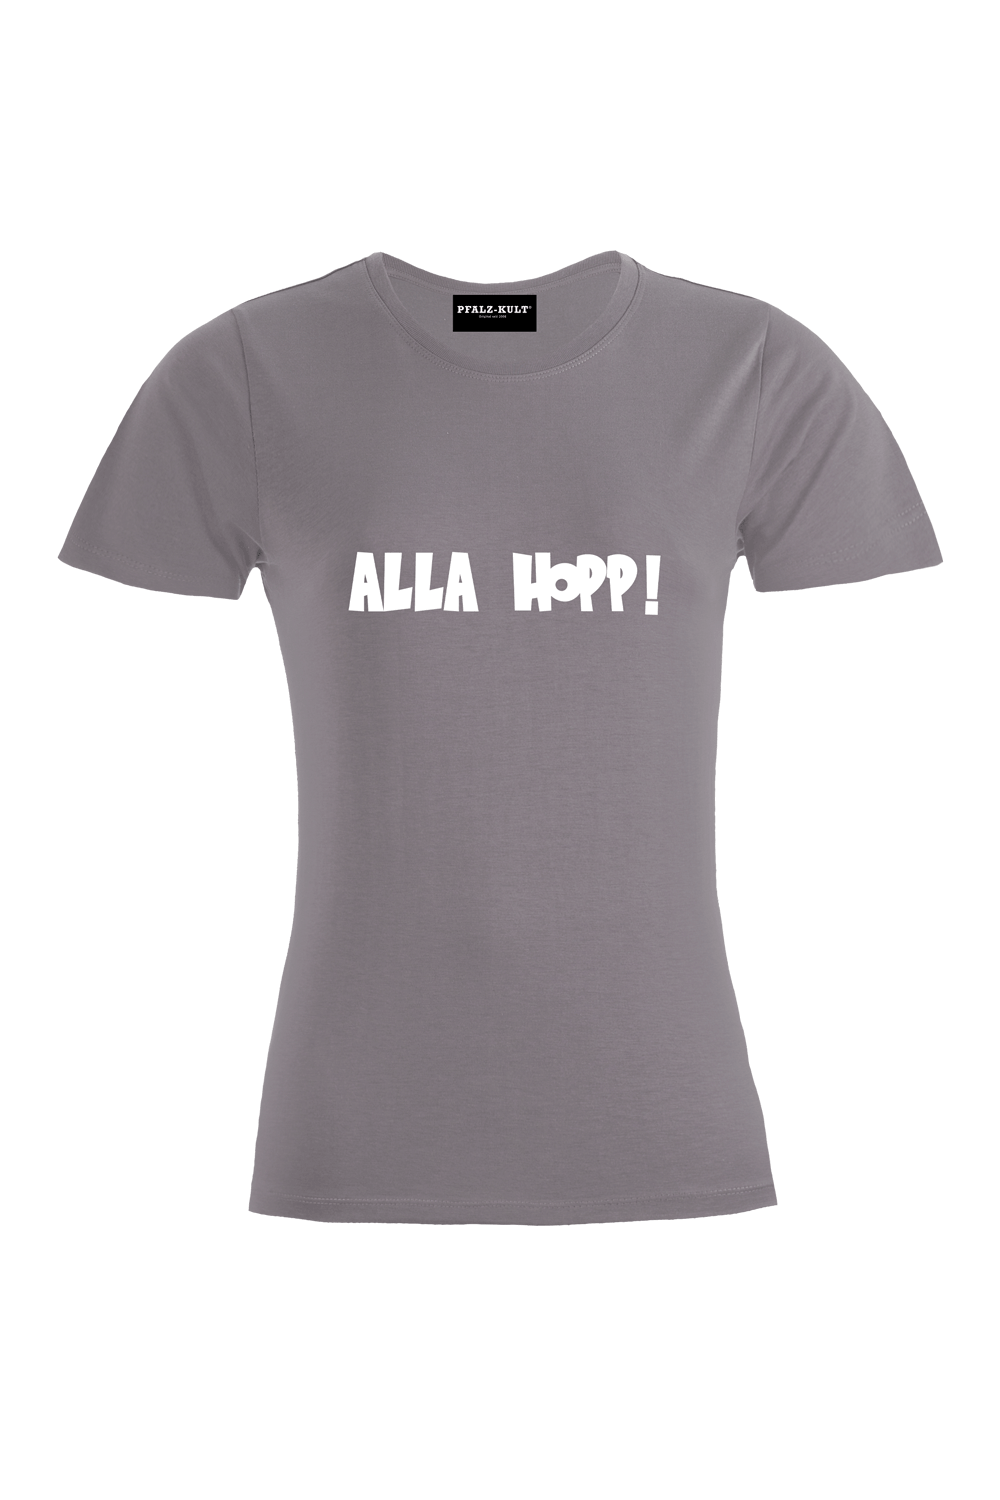 Alla Hopp - Frauen T-Shirt